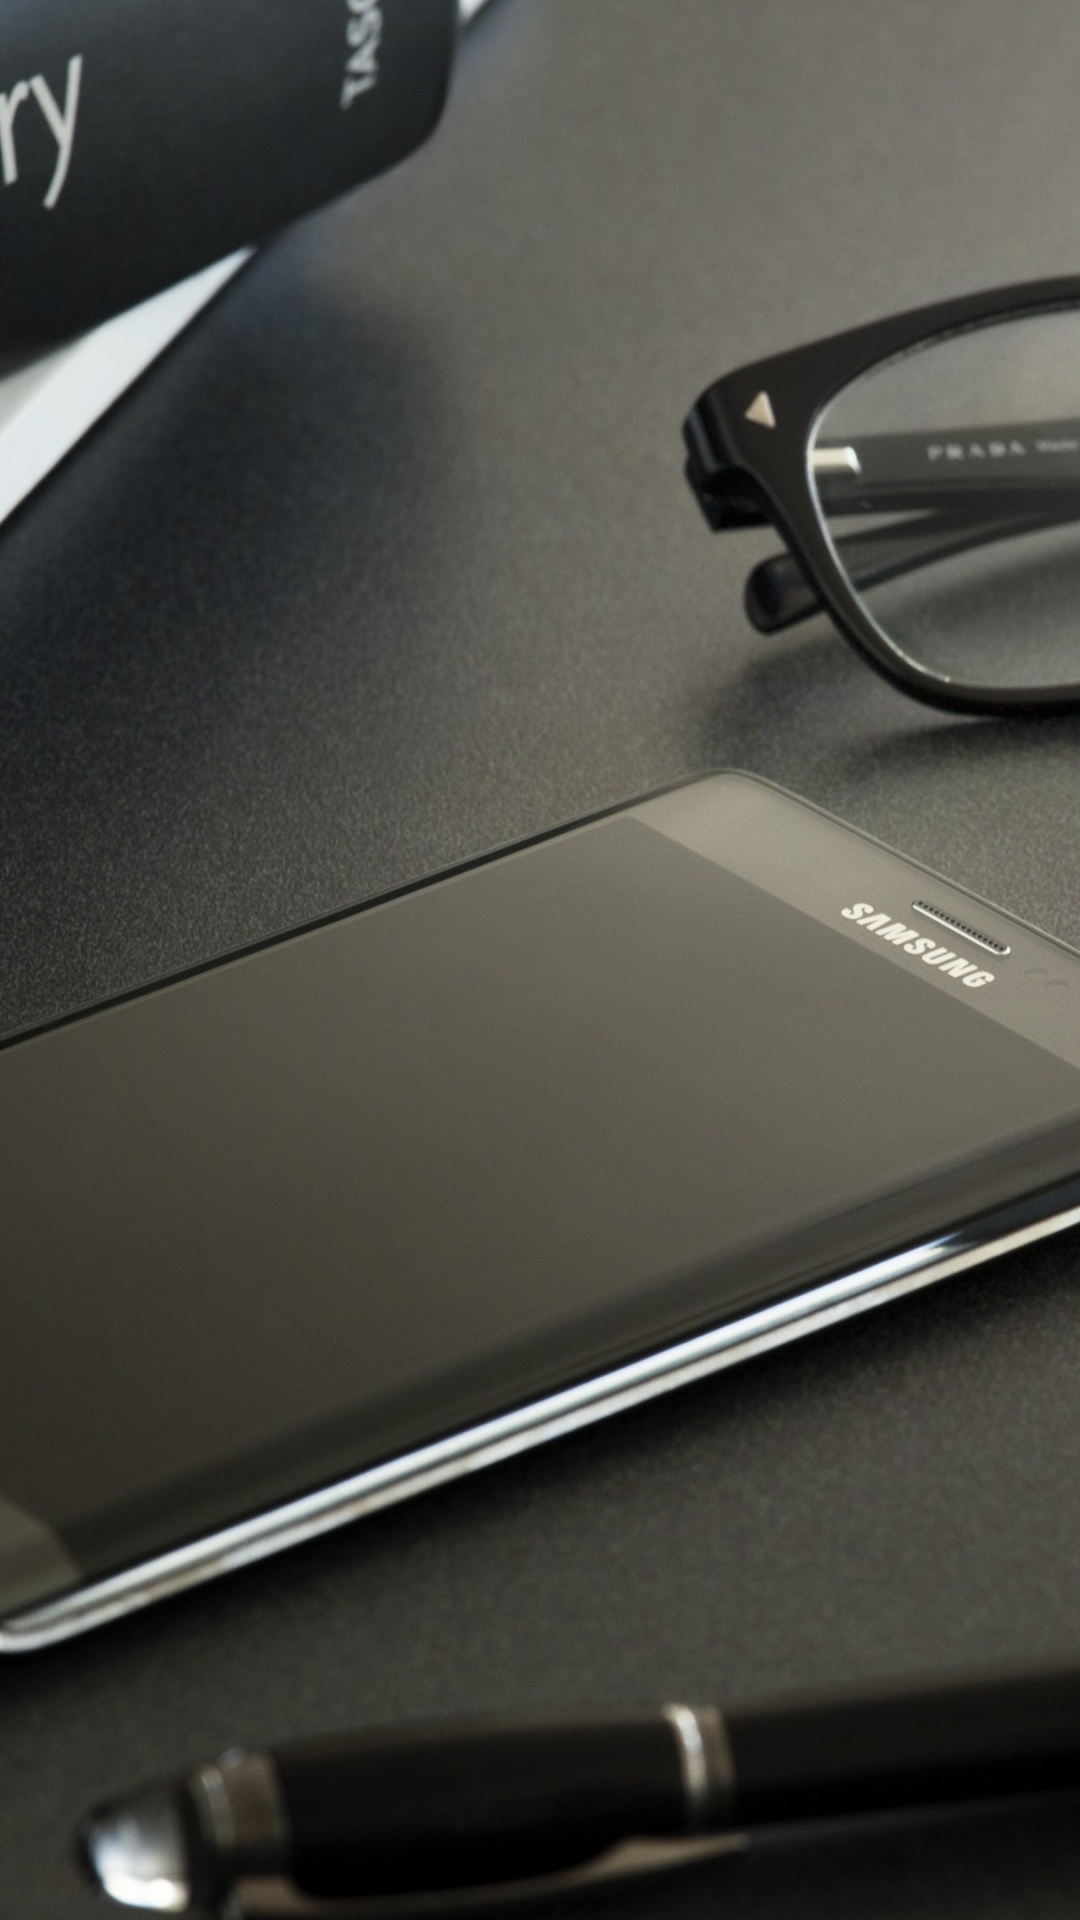 Anteojos Enmarcados Negros al Lado Del Teléfono Inteligente Samsung Android Negro. Wallpaper in 1080x1920 Resolution